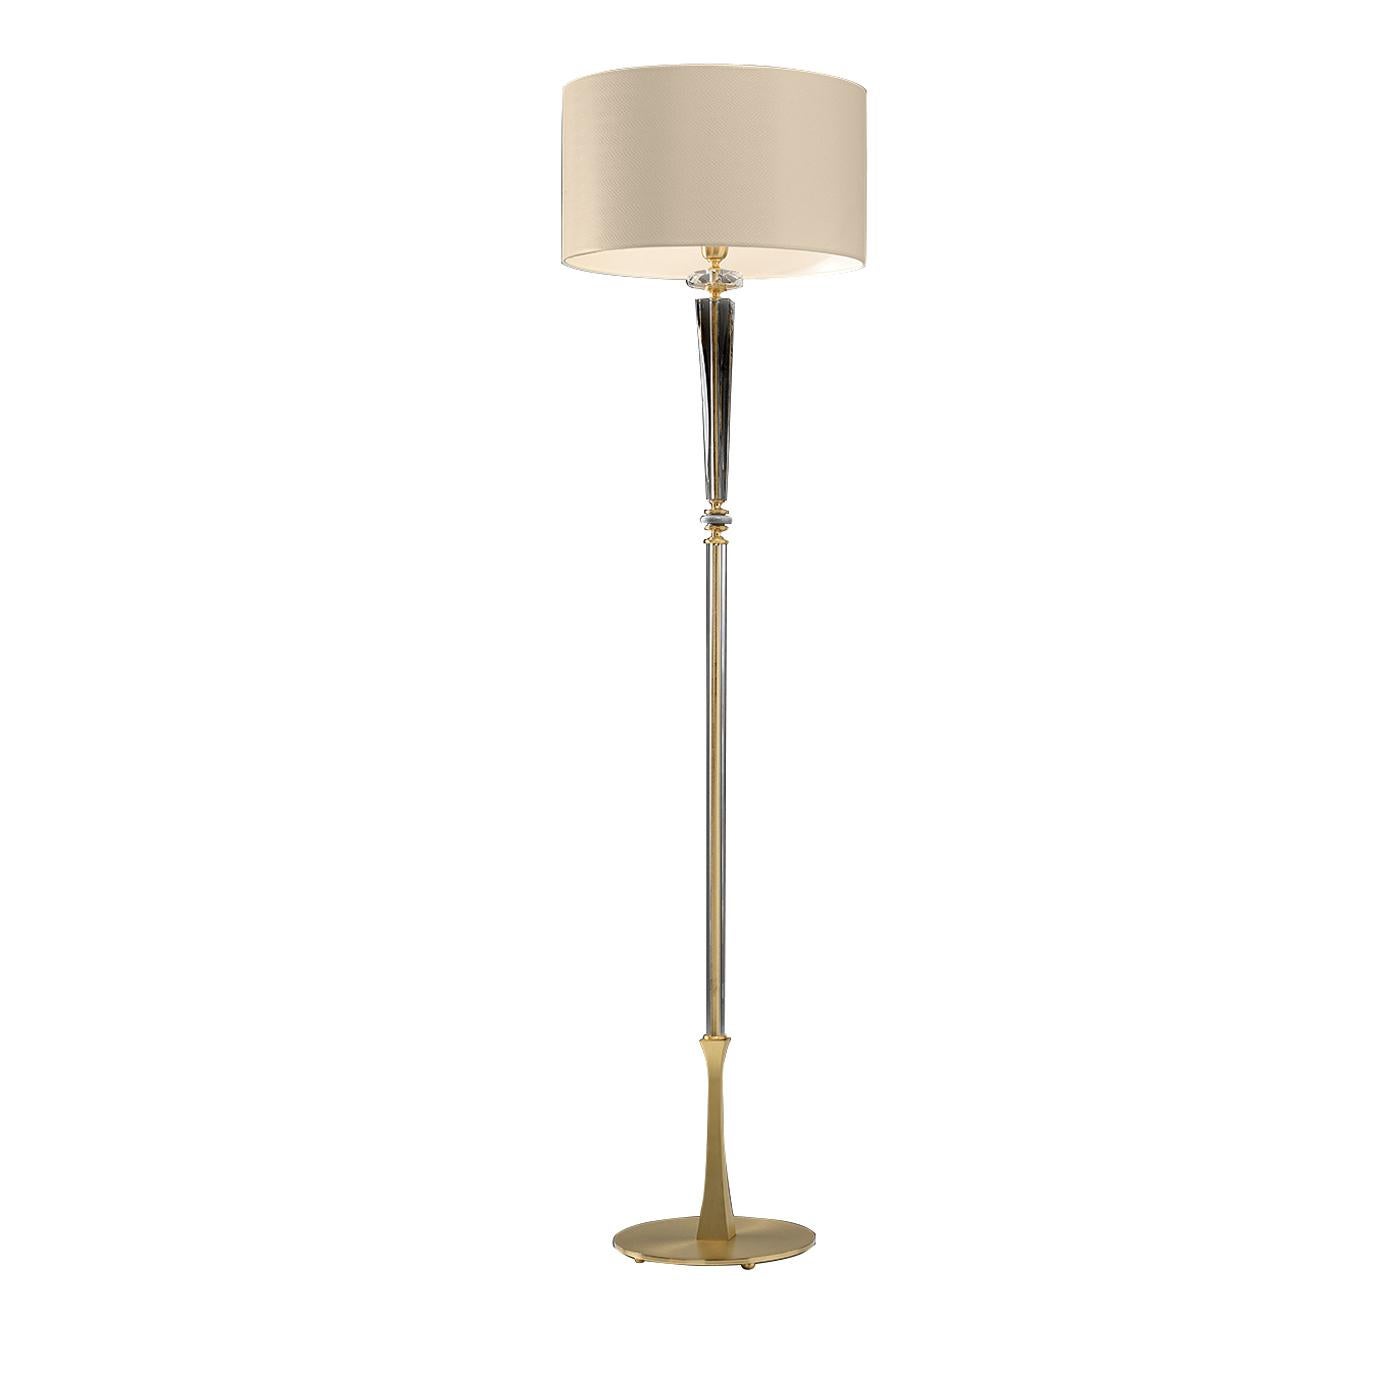 Simple mais élégant, ce lampadaire conçu par Euroluce Light of Italy a un corps métallique mince avec une base ronde en finition satinée dorée et un élément conique en verre soufflé transparent avec des détails dorés qui apportent une sophistication